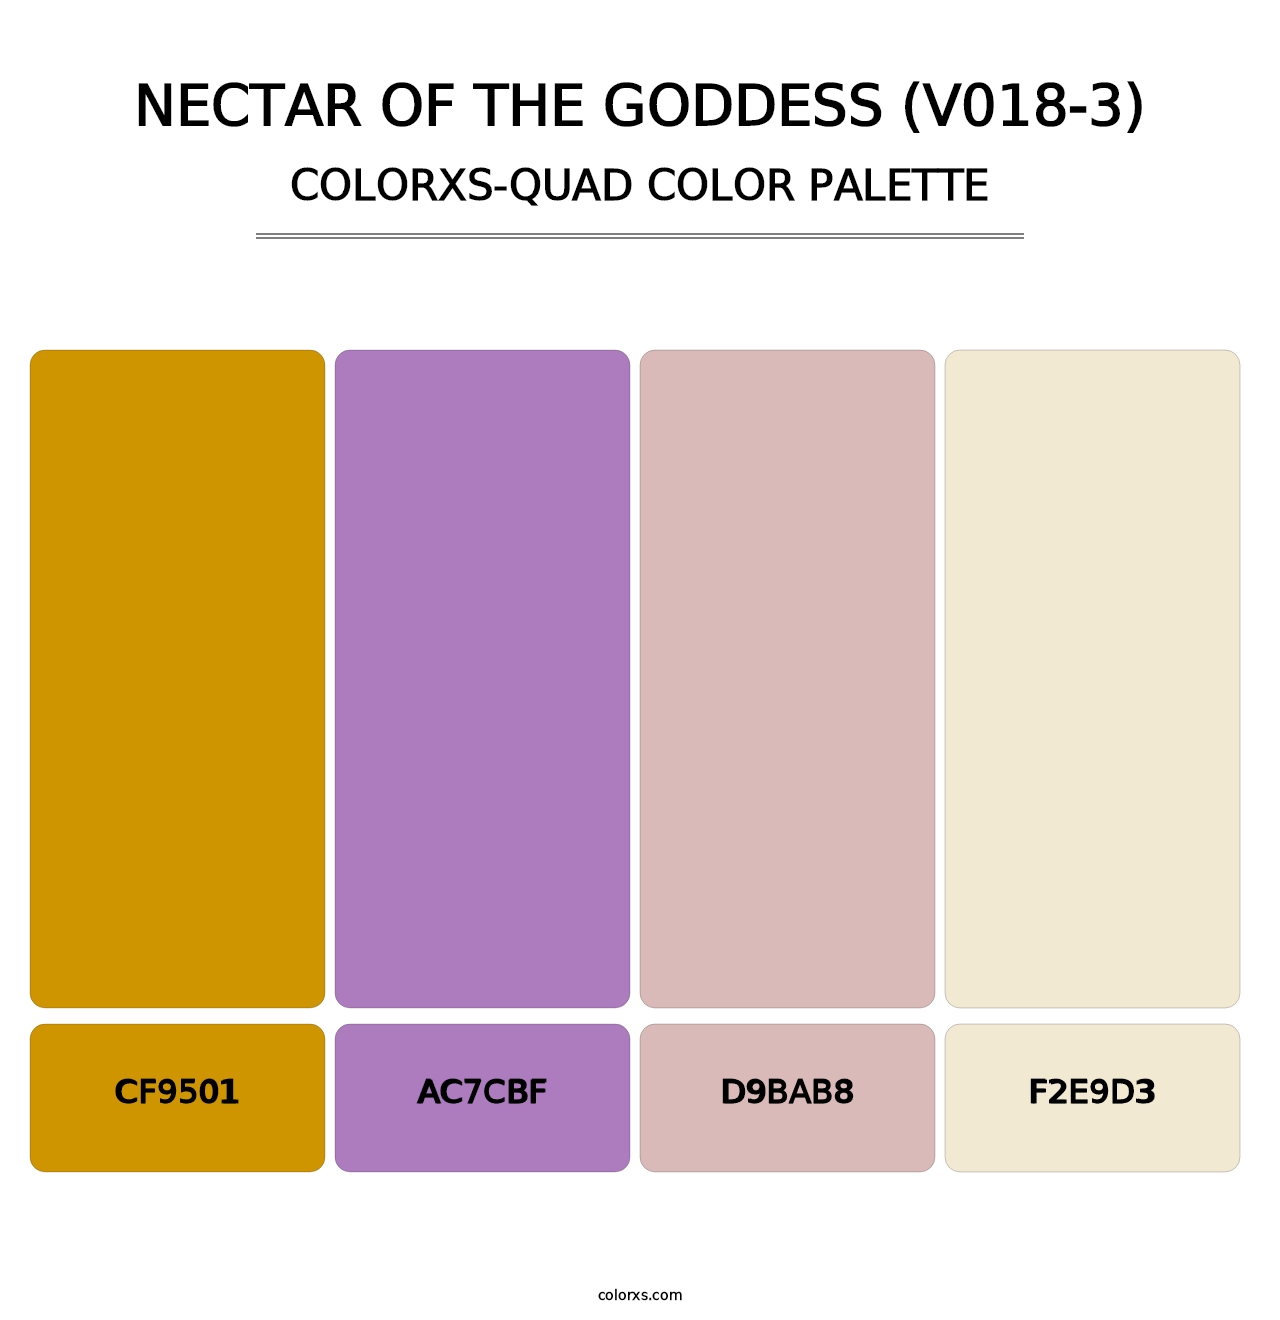 Nectar of the Goddess (V018-3) - Colorxs Quad Palette